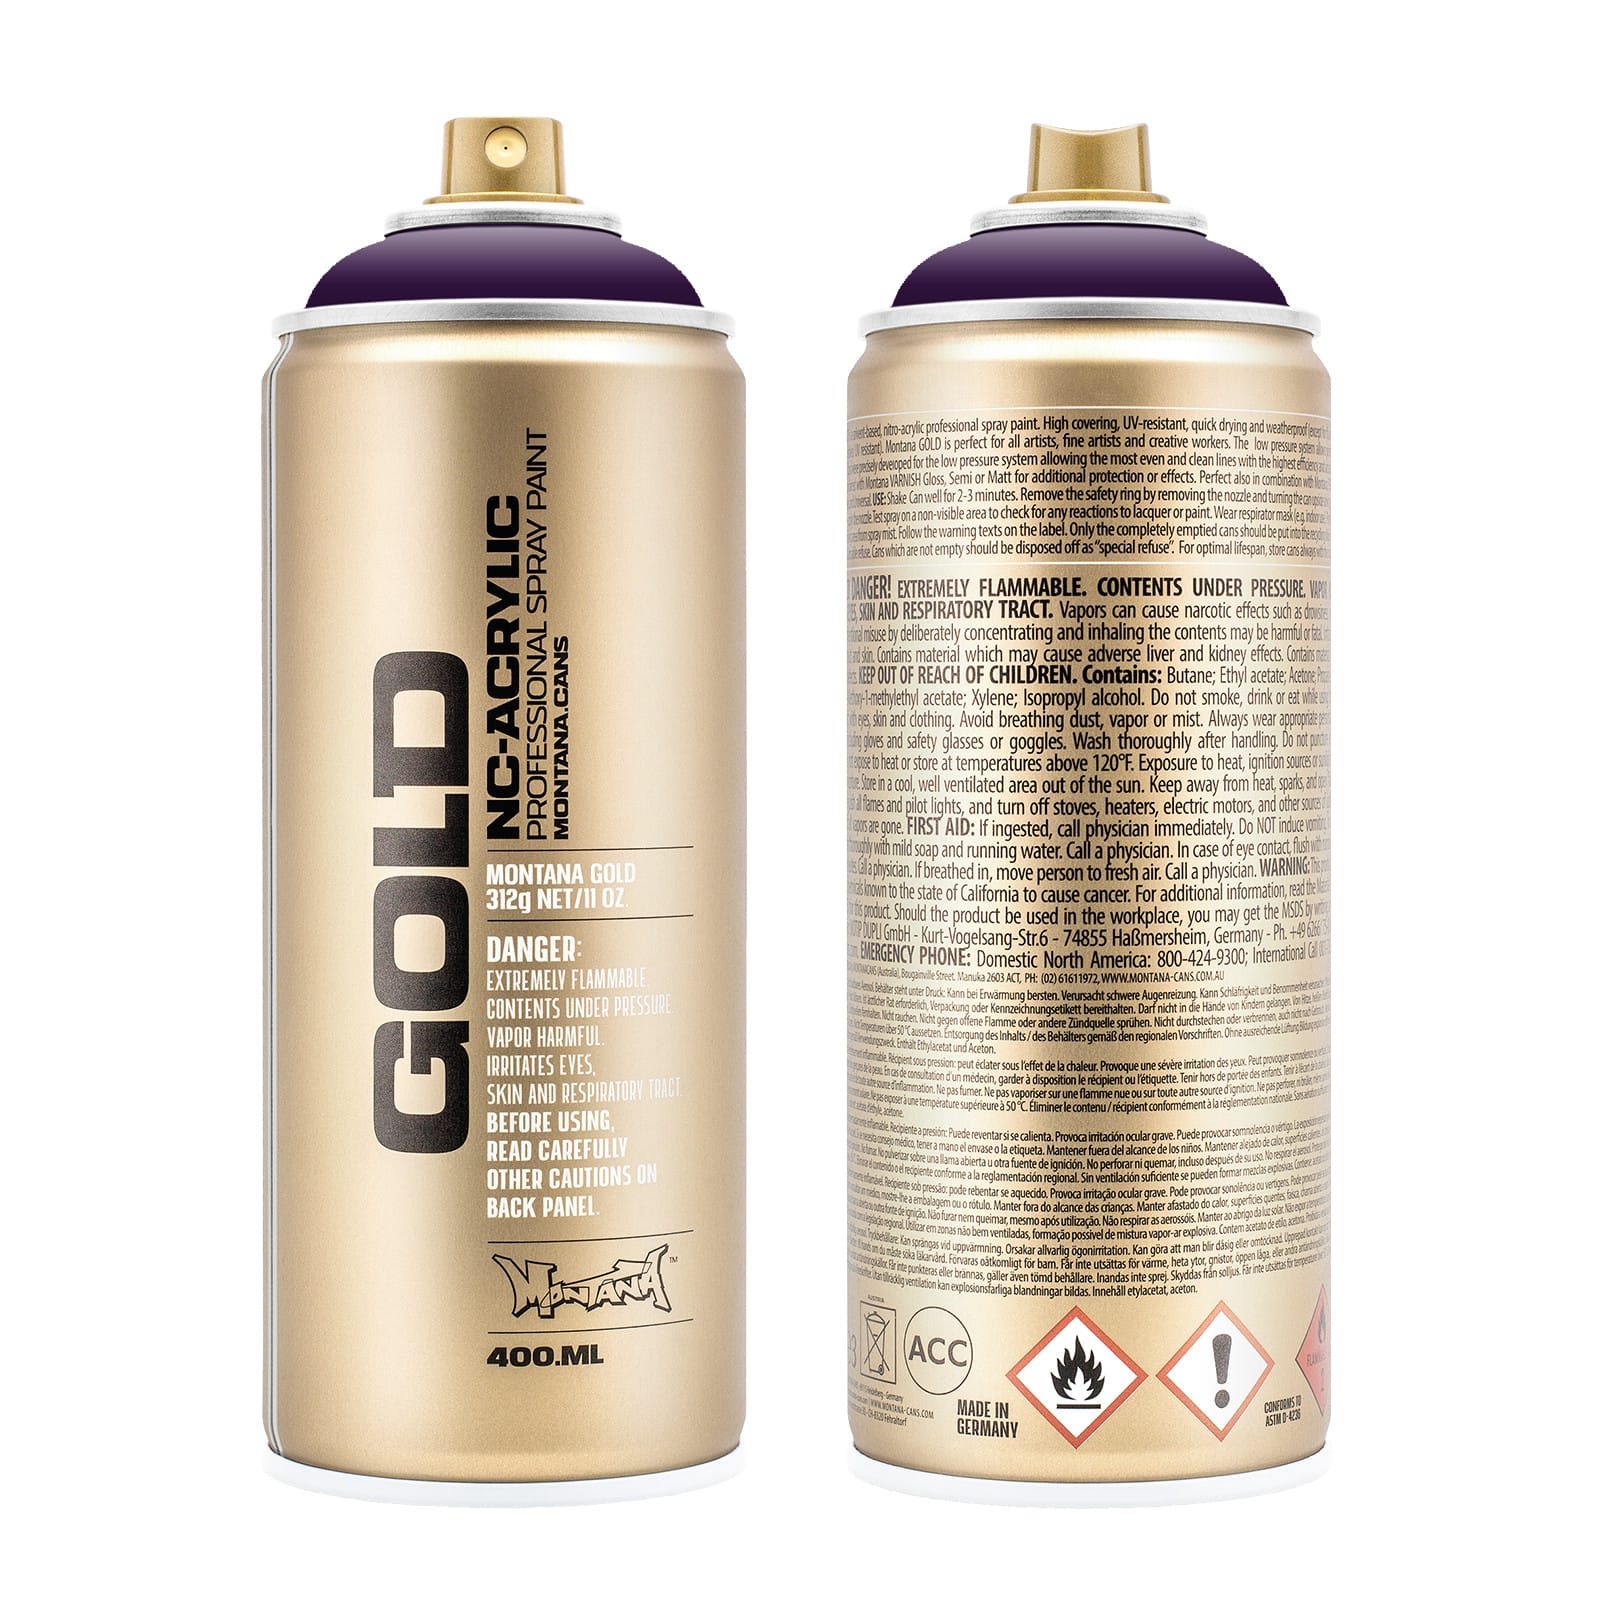 Plaid Mod Podge Spray Sealer, 11 oz., Supergloss